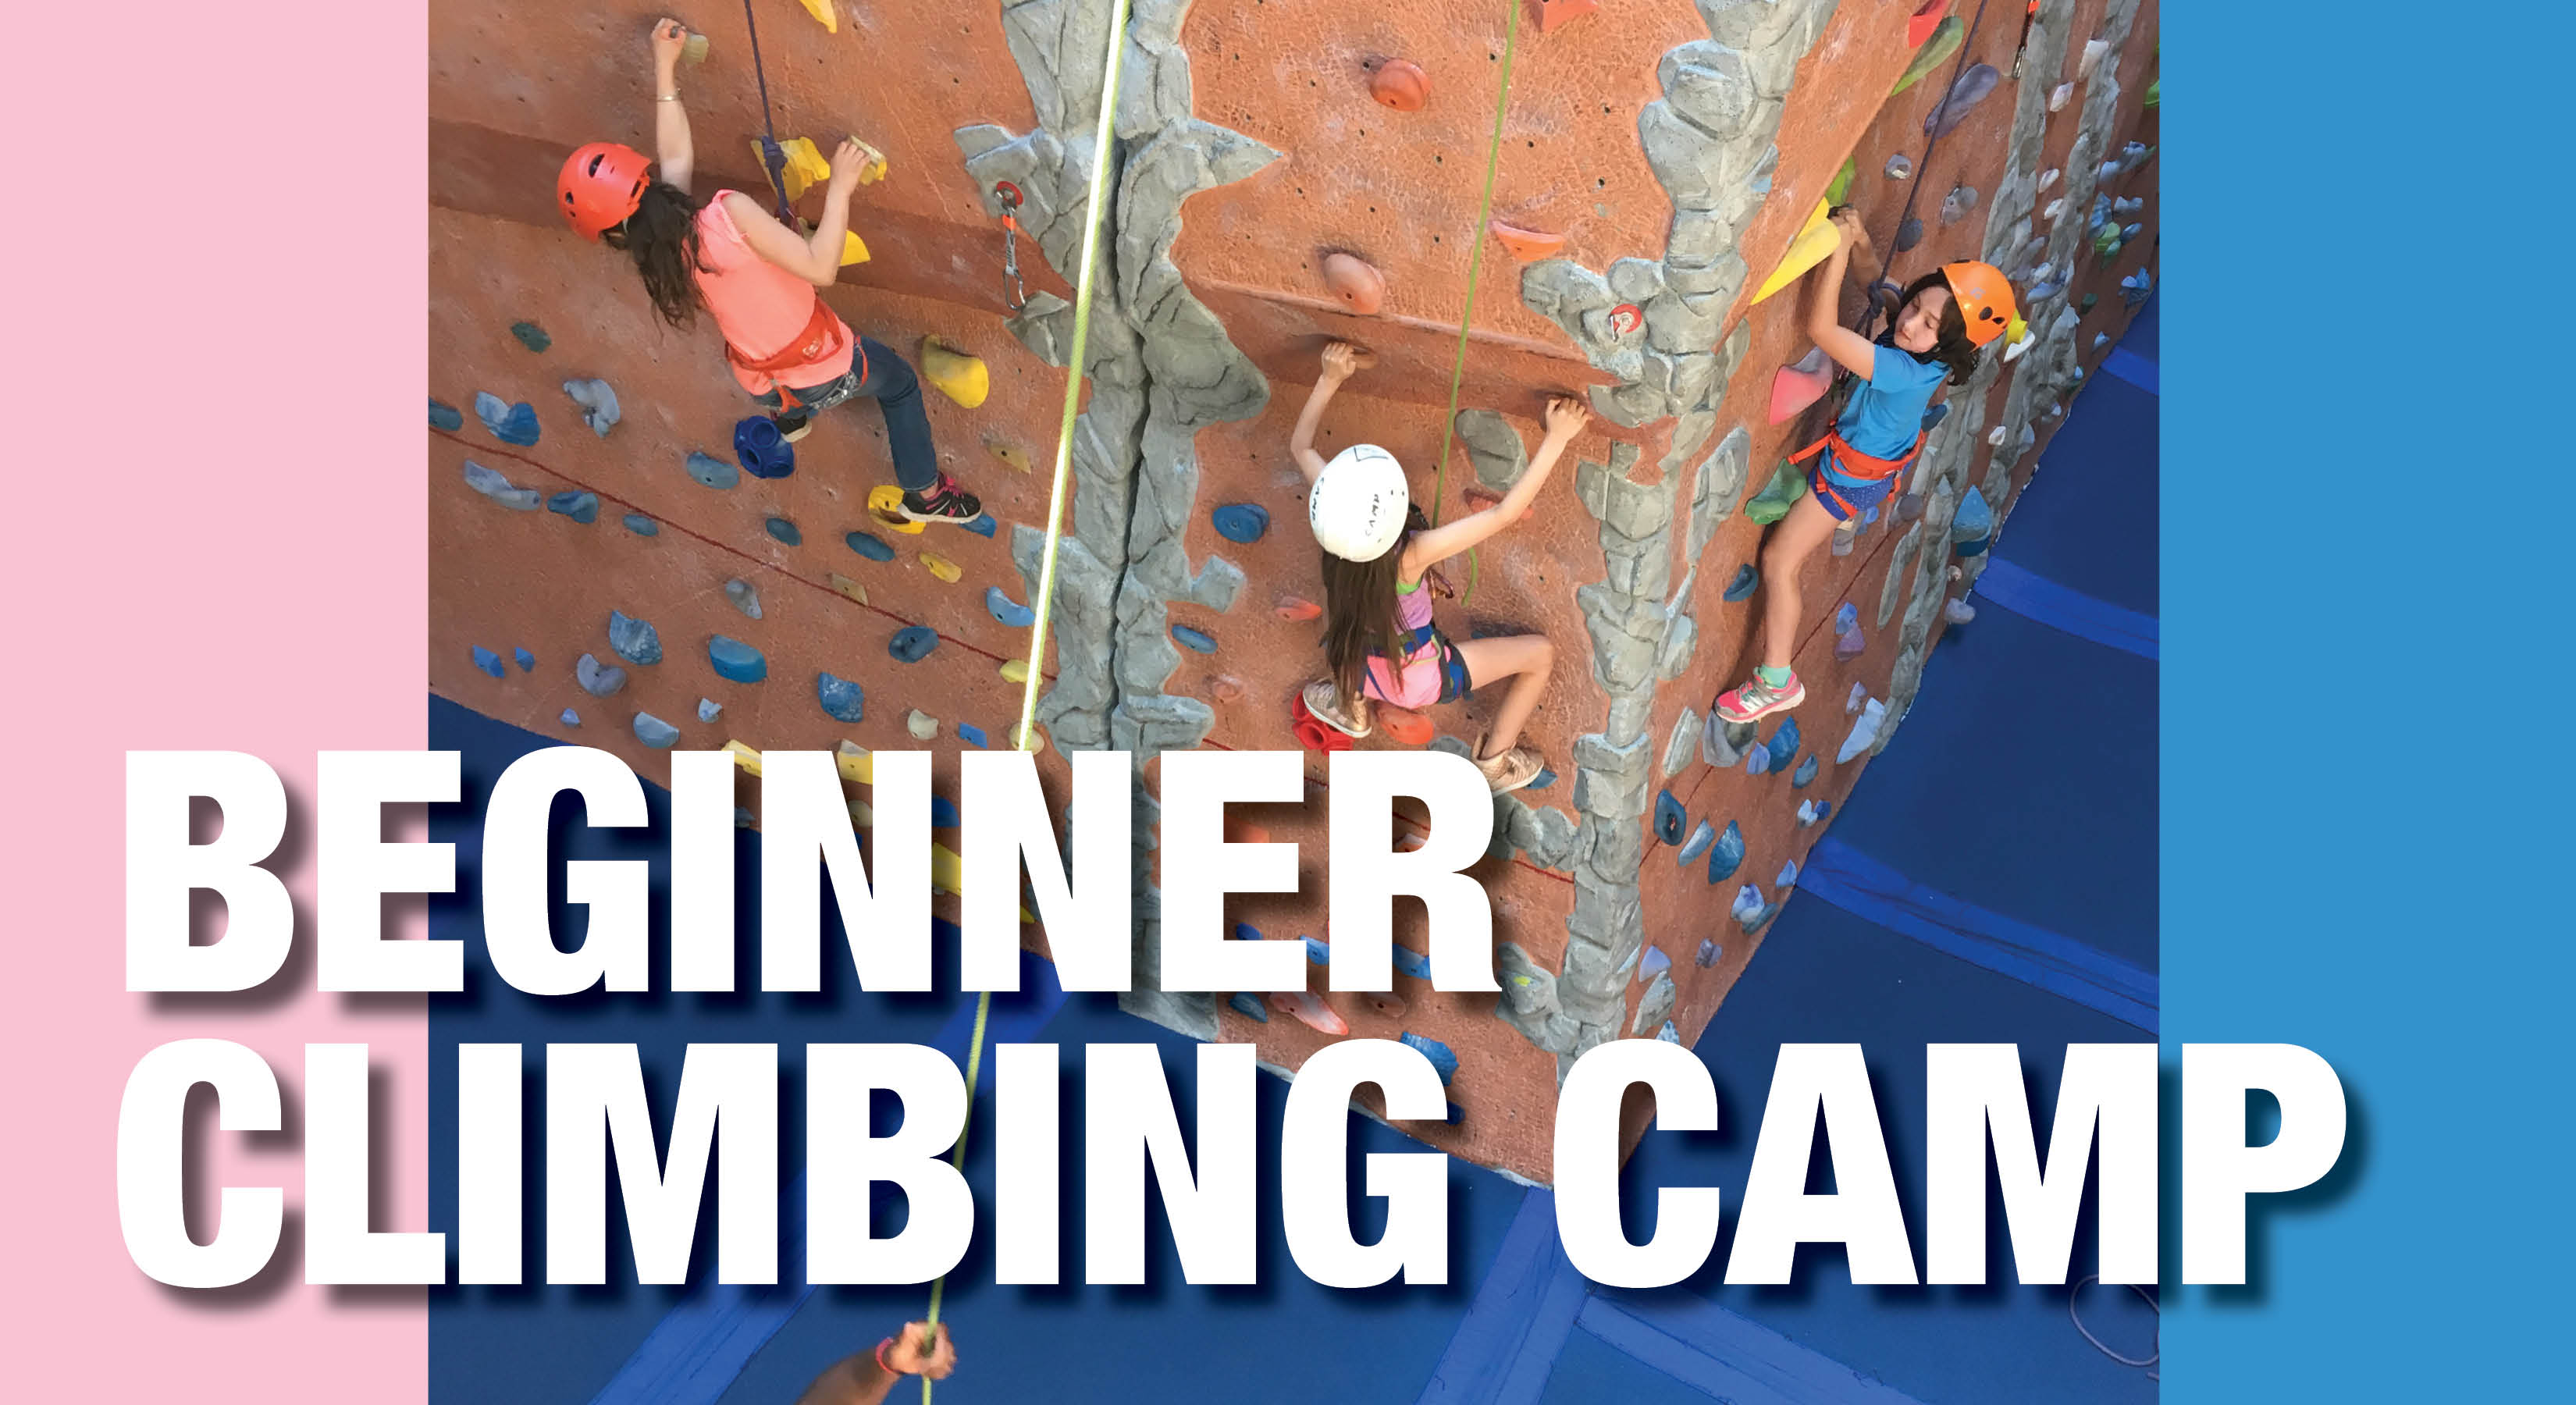 Beginners Climbing Camp